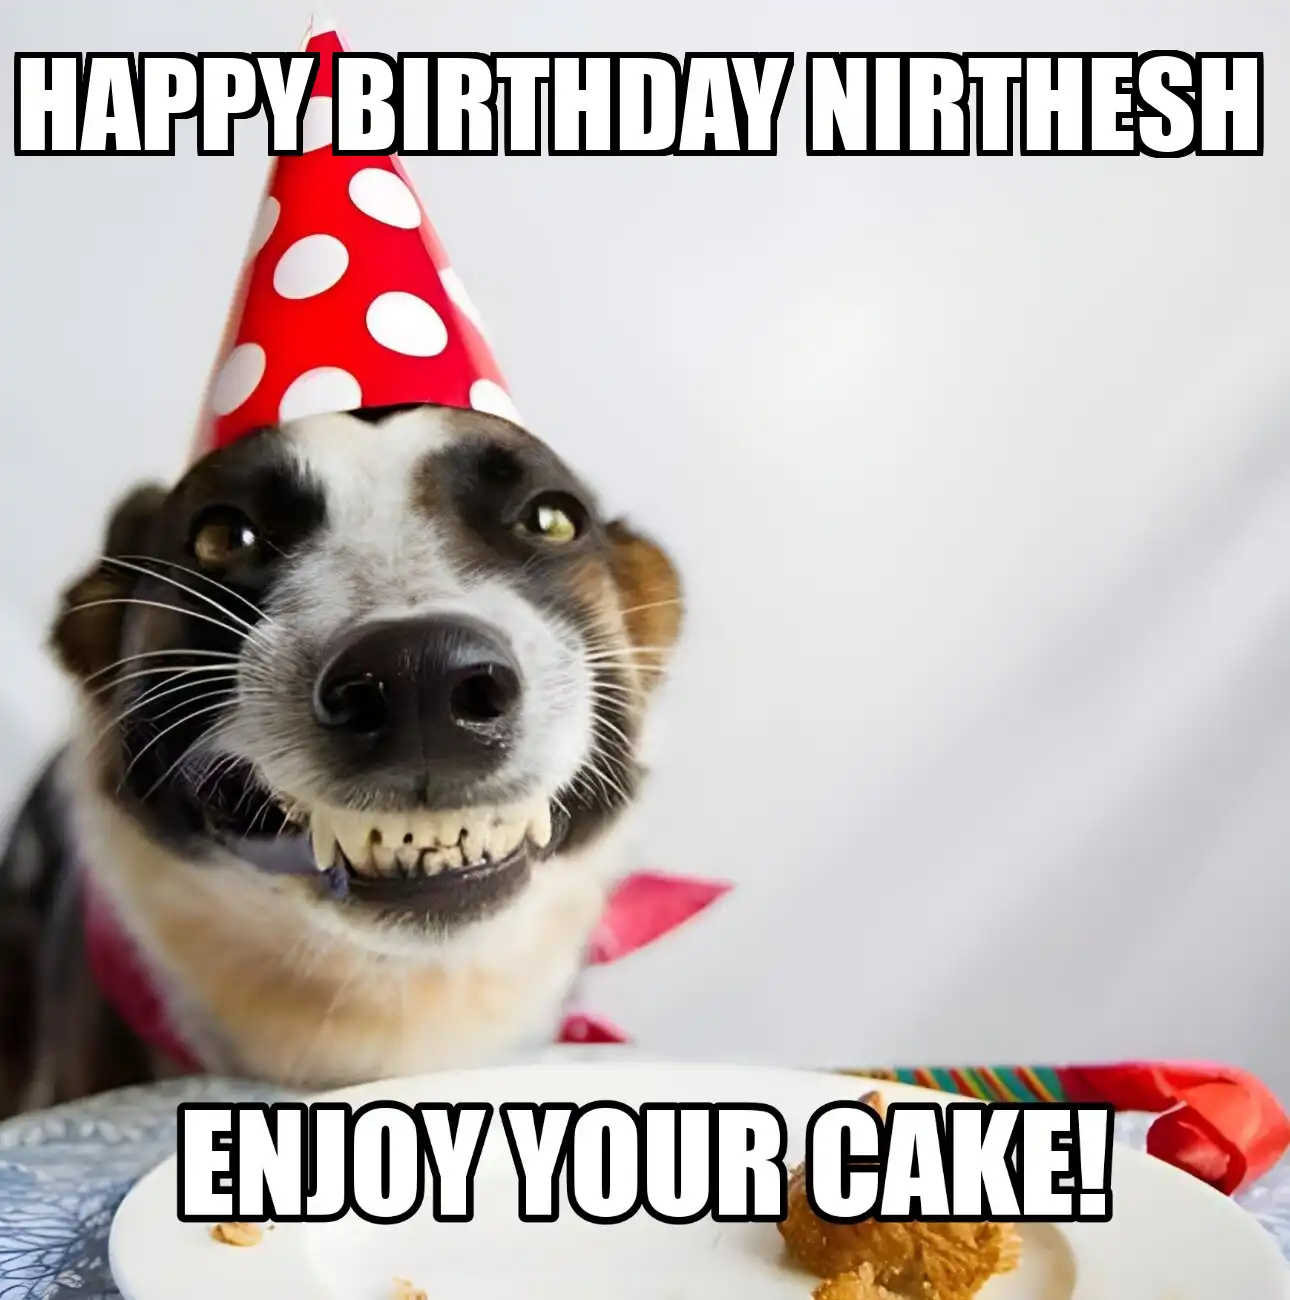 Happy Birthday Nirthesh Enjoy Your Cake Dog Meme